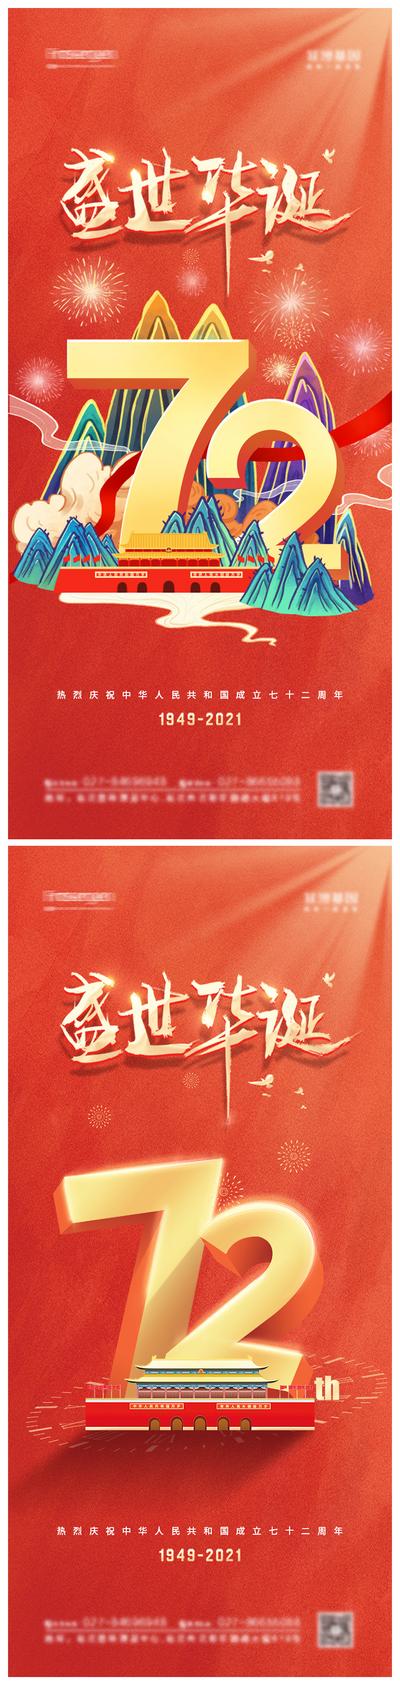 南门网 国庆节72周年系列海报